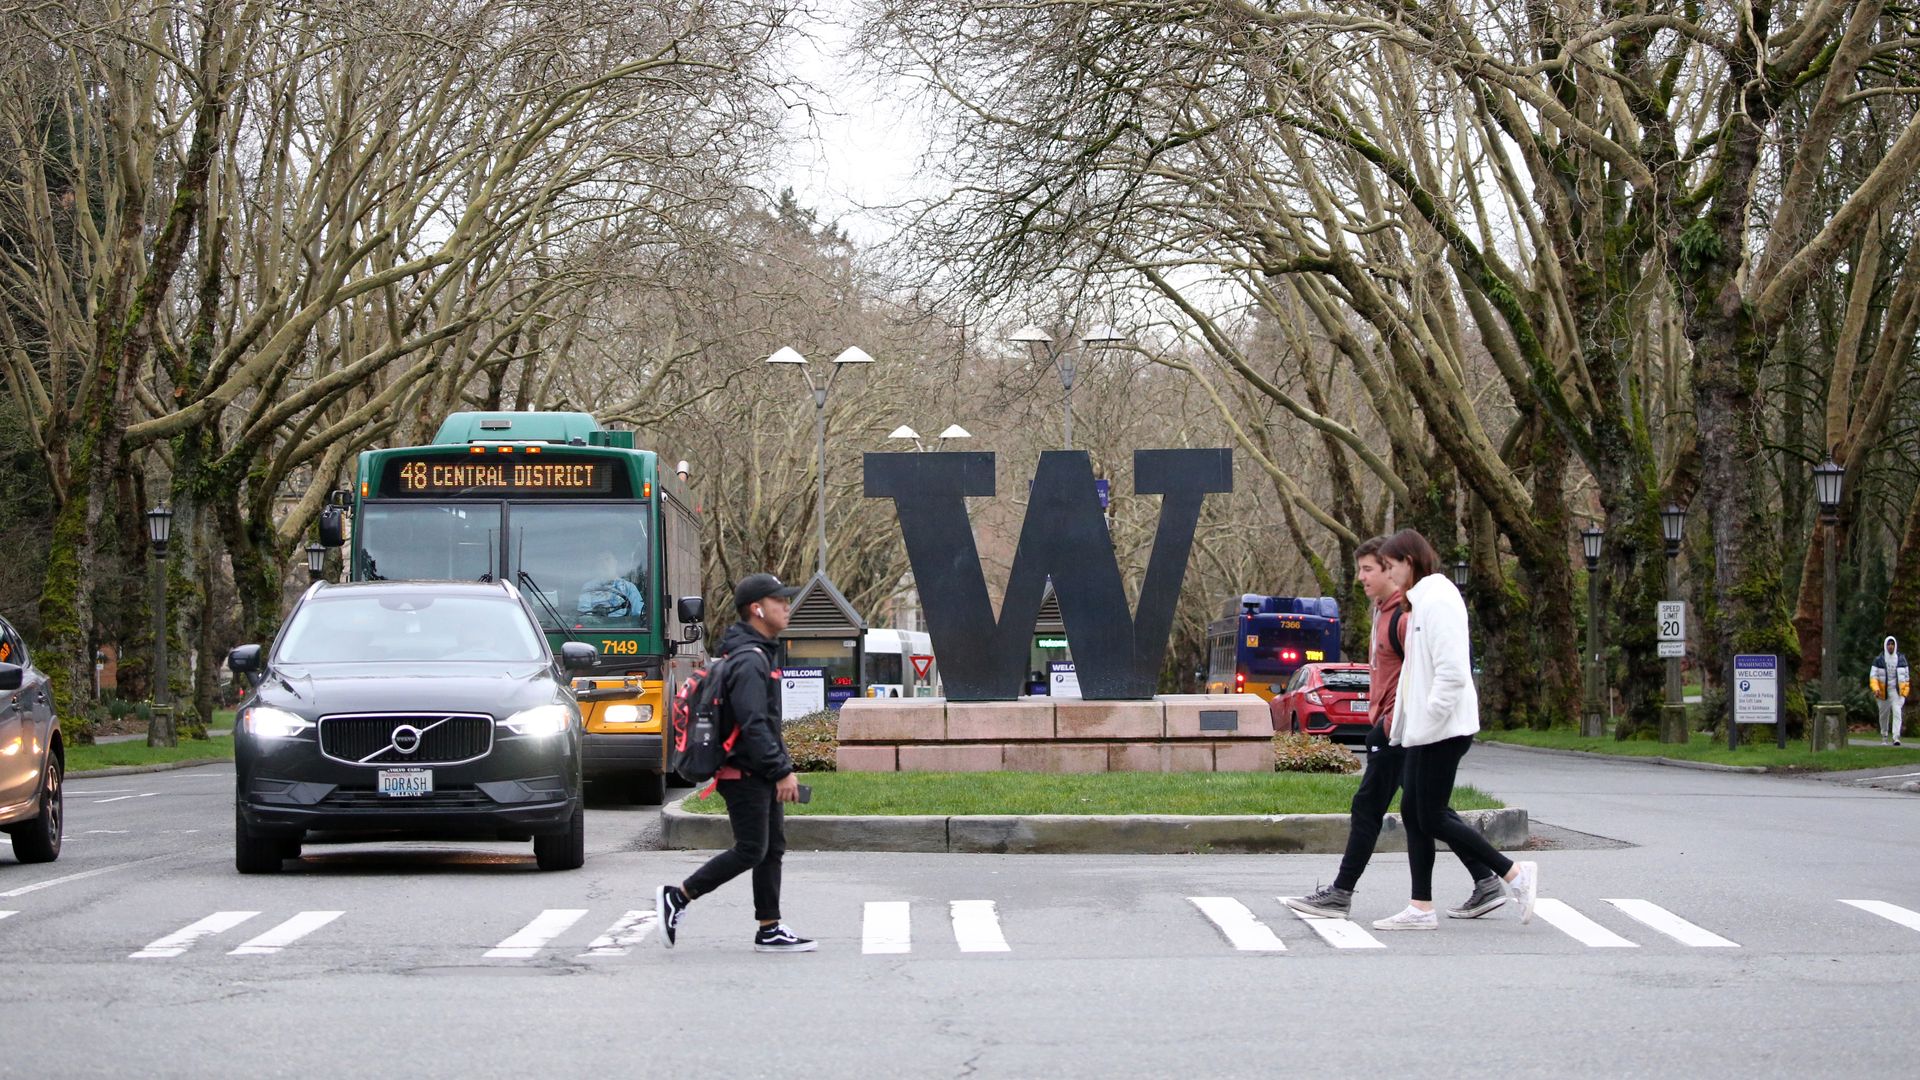 University of Washington campus